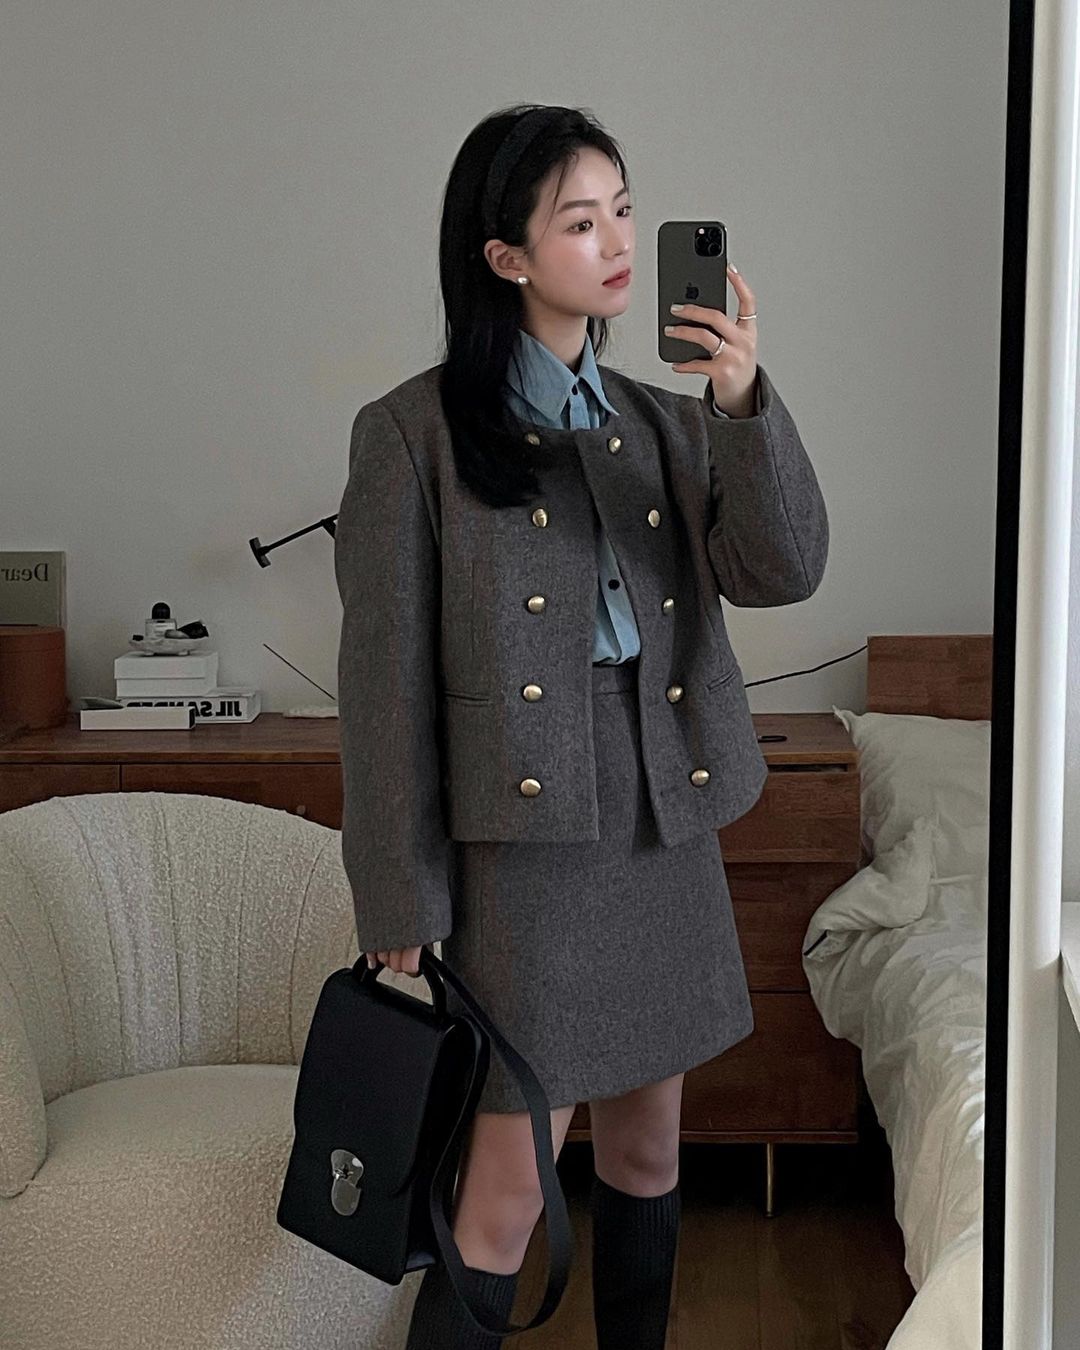 Sắm một chiếc áo dạ ngắn, quý cô Hàn Quốc mix được 8 set đồ cực trẻ xinh sang chảnh - Ảnh 2.